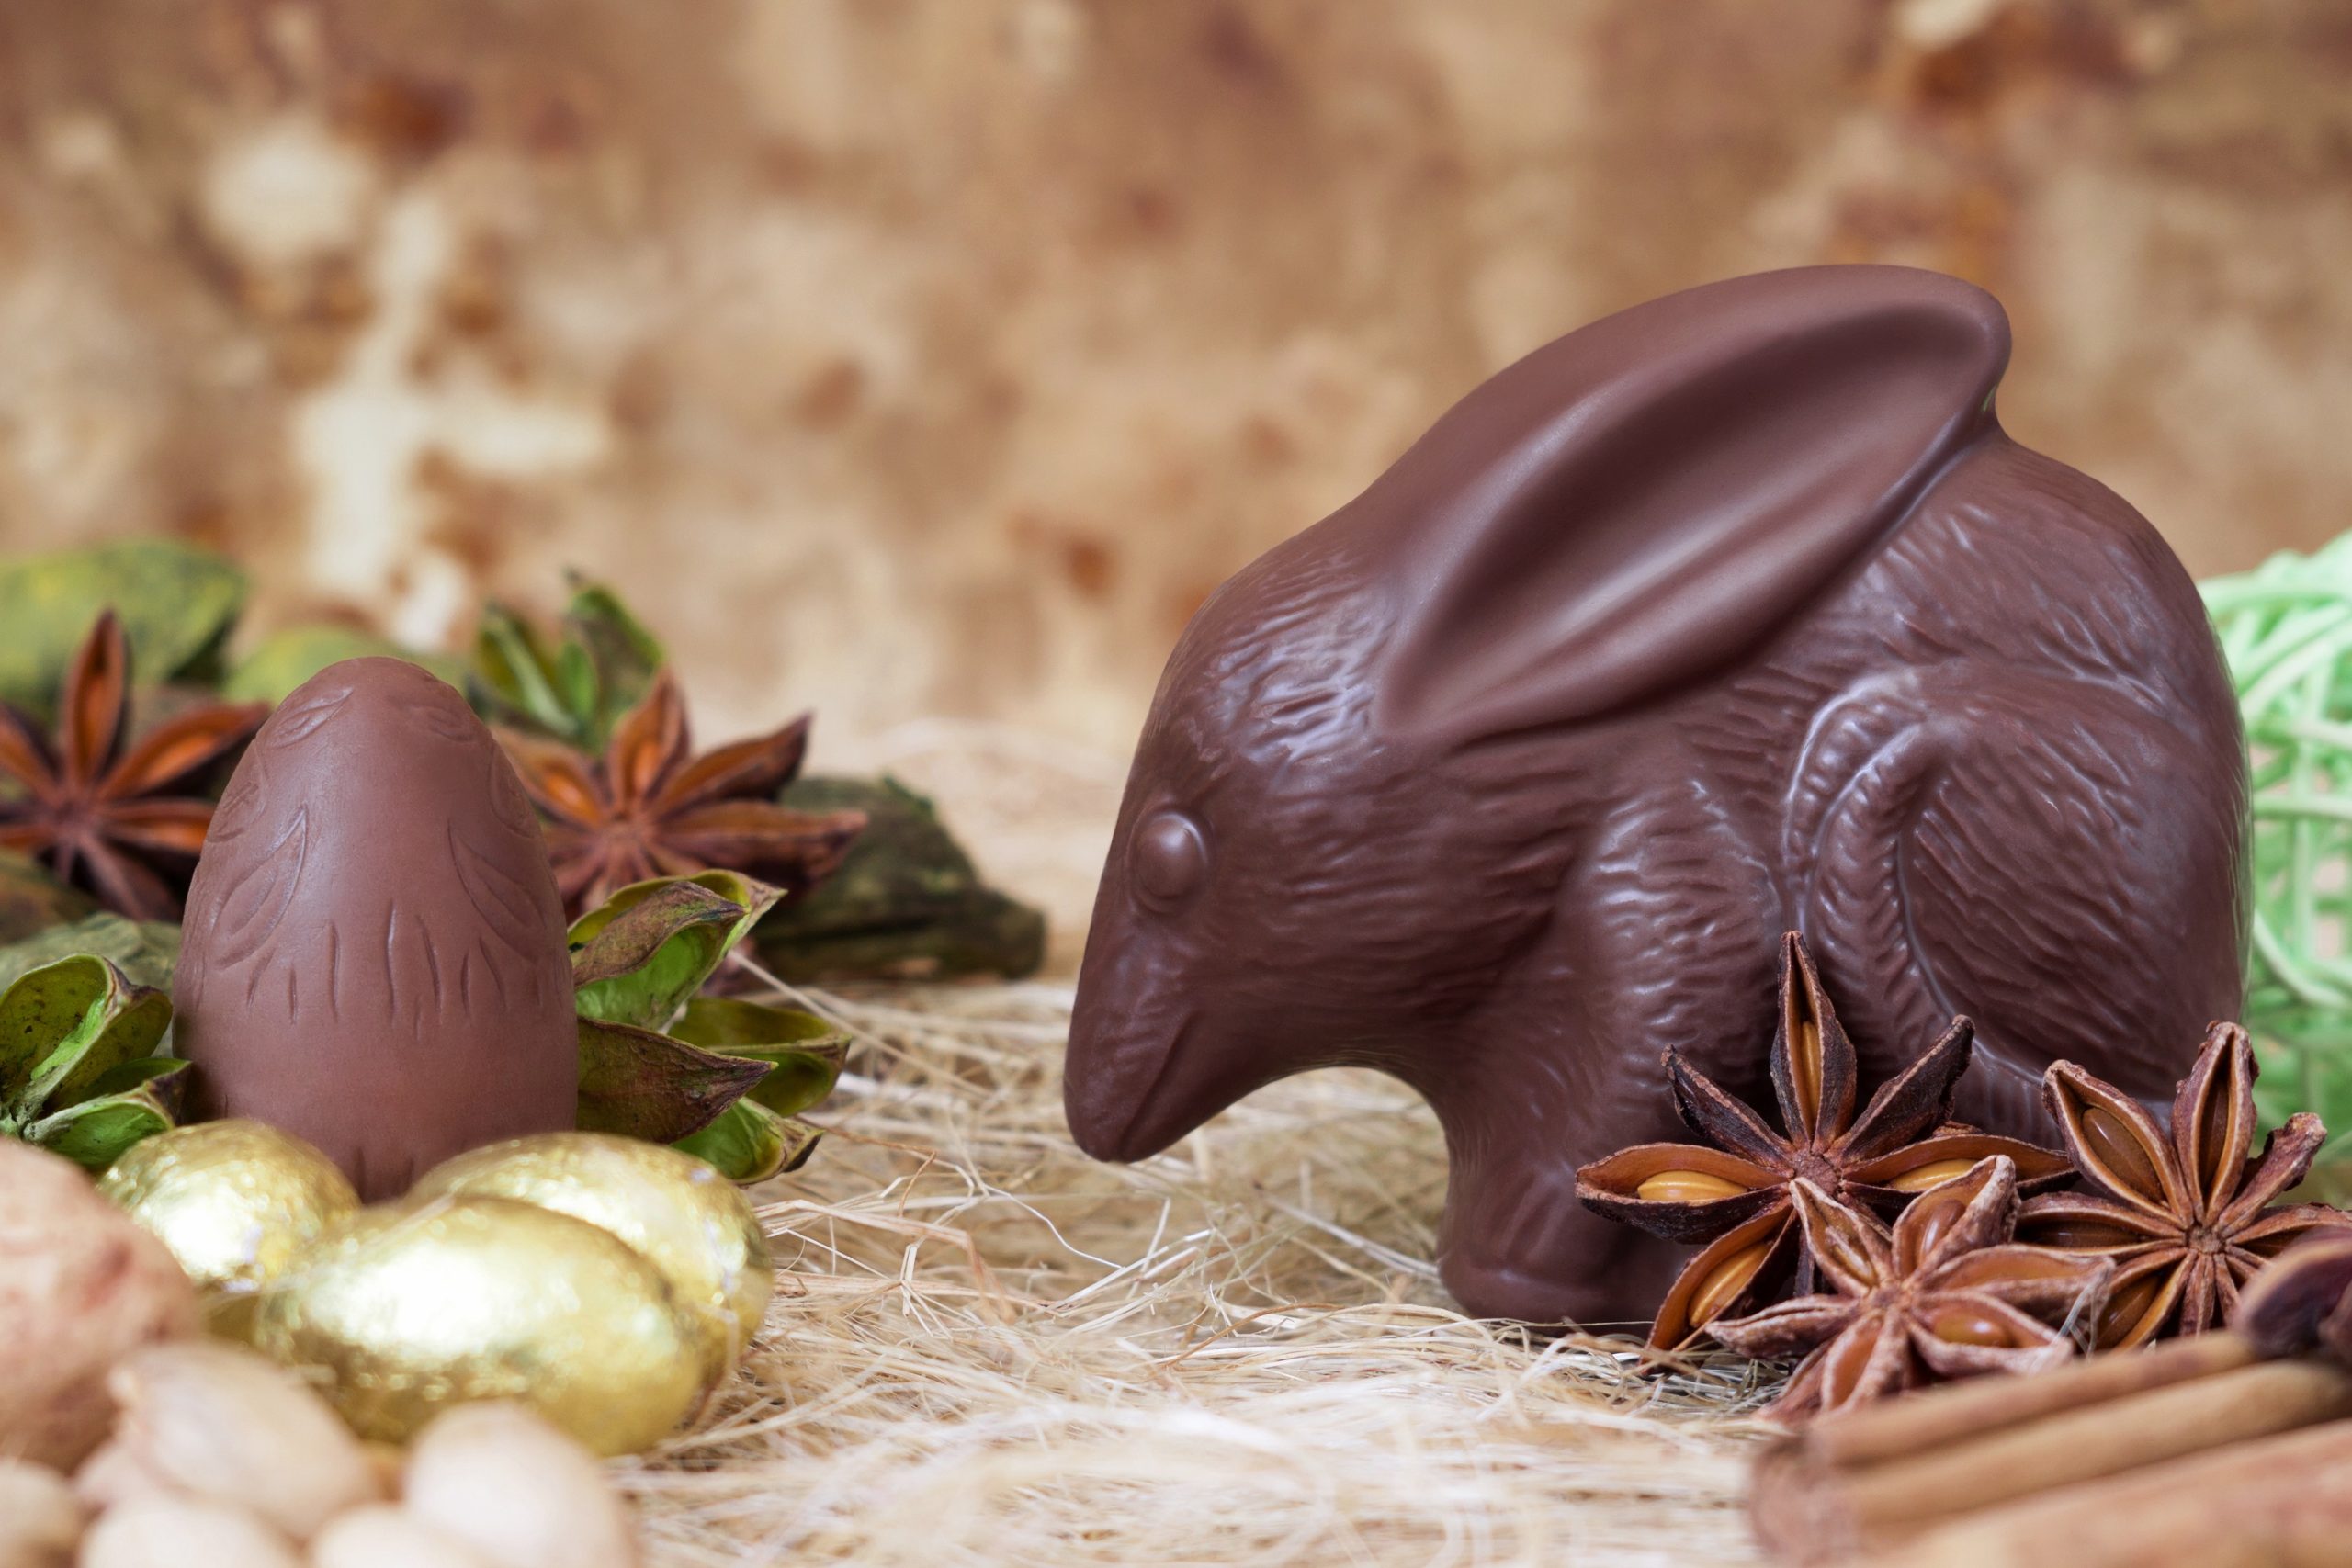 Ausztráliában nincsenek csokinyuszik, legalábbis biztosan nem olyan divatosak mint a csokiból készült erszényesnyulak. A különleges formájú édesség nemcsak felhívja a figyelmet arra, hogy a védett állat egyedeinek száma folyamatosan csökken, de minden egyes ilyen csoki megvásárlásával a megmentésüket támogatják az ausztrálok (Kép: Getty Images)